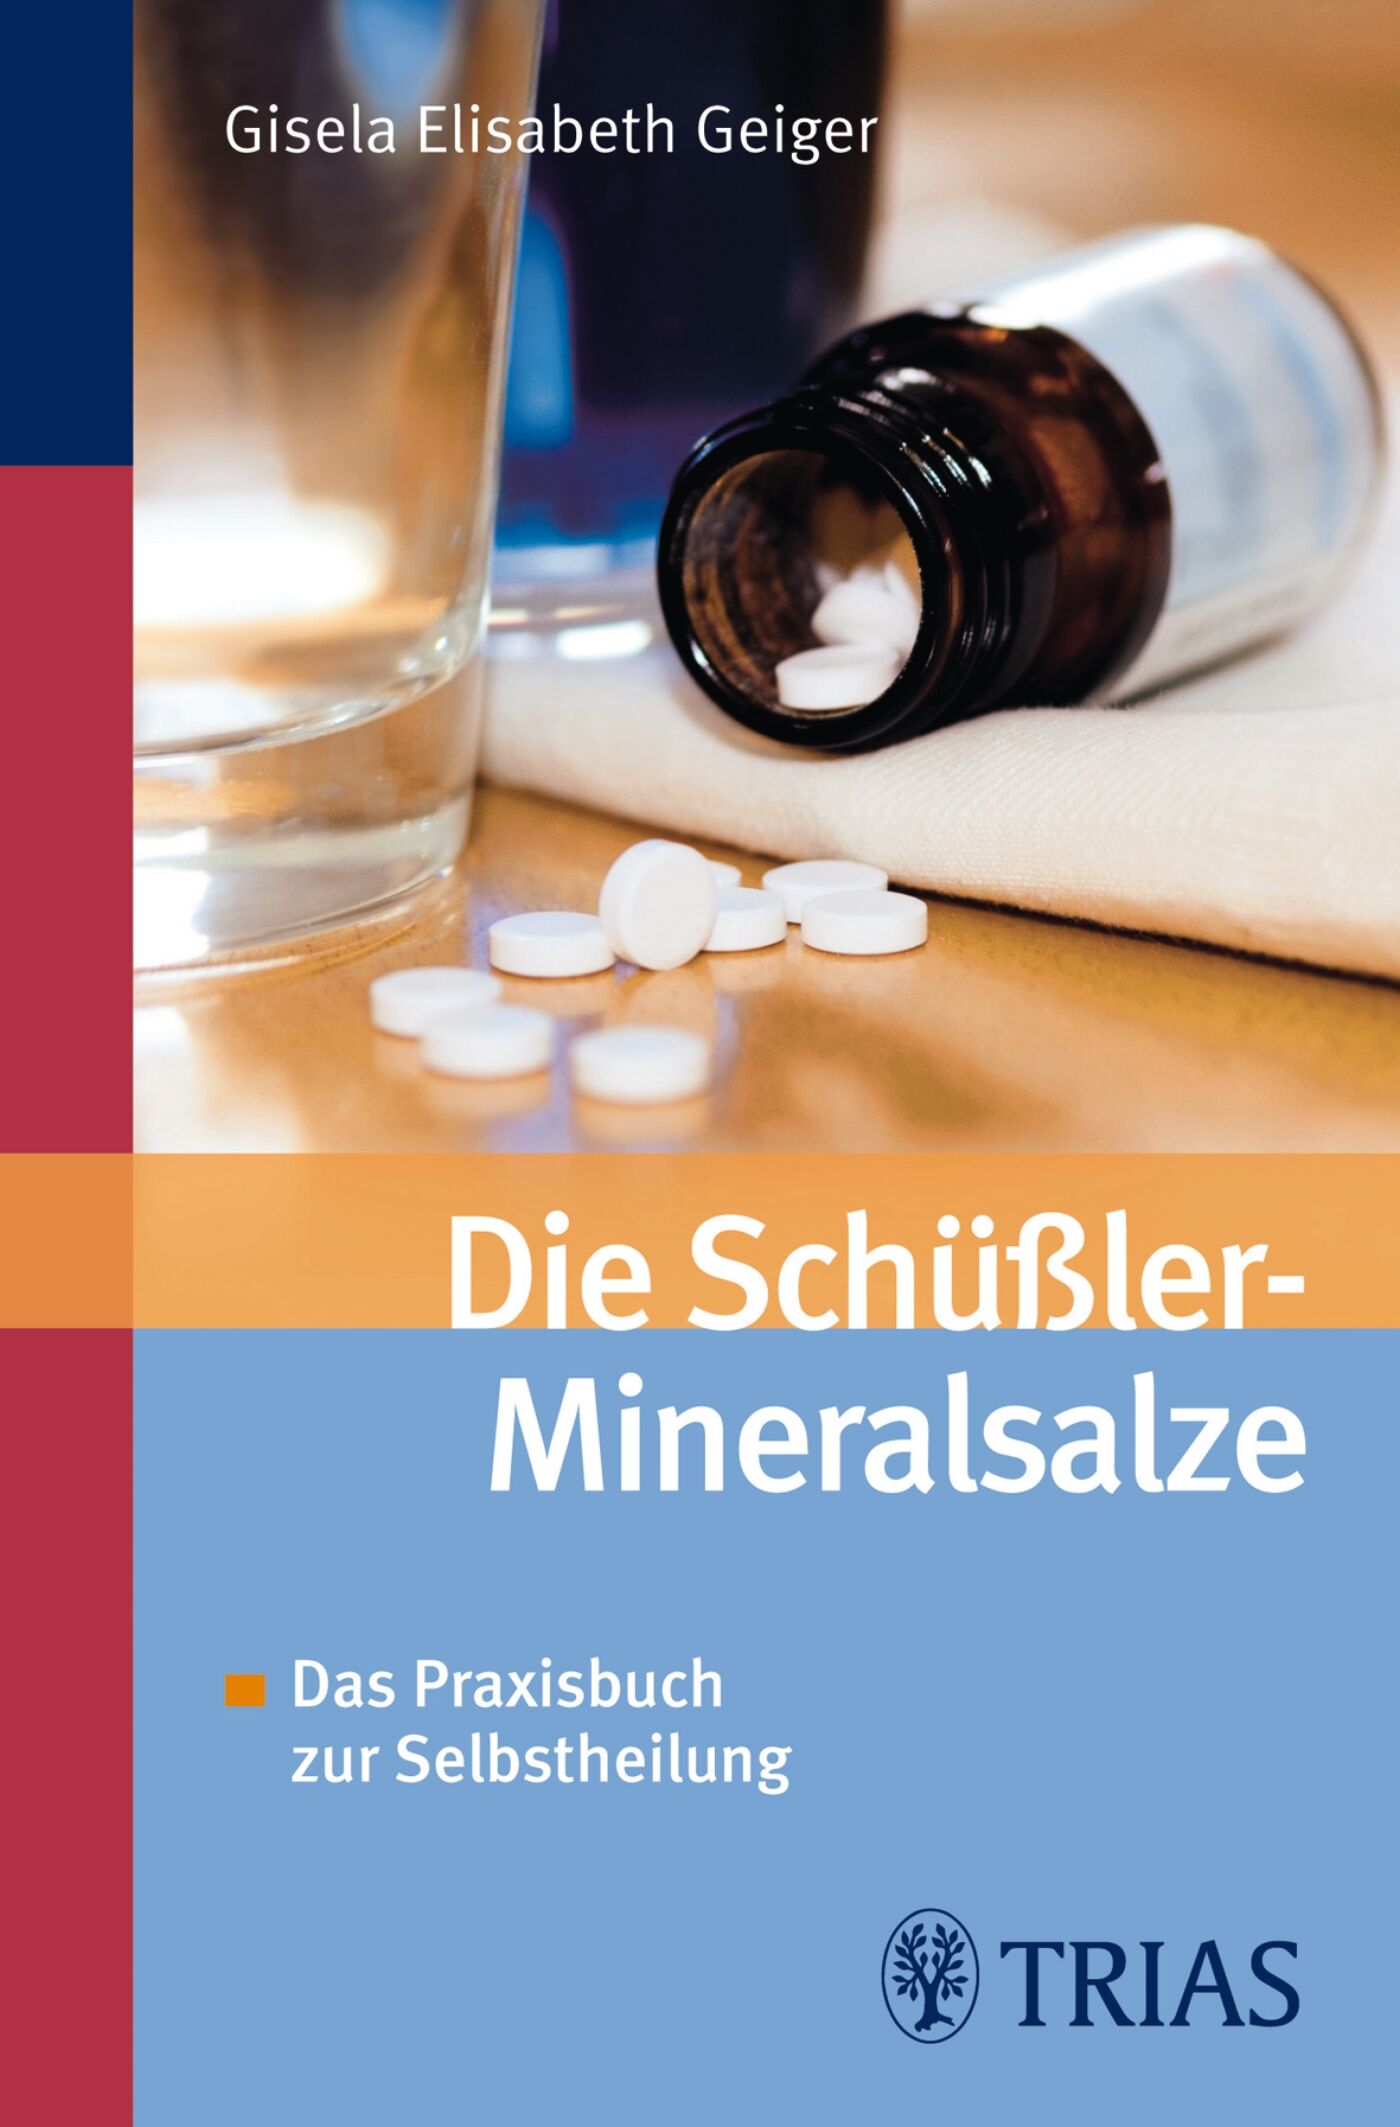 Die Schüssler-Mineralsalze, 9783830461999